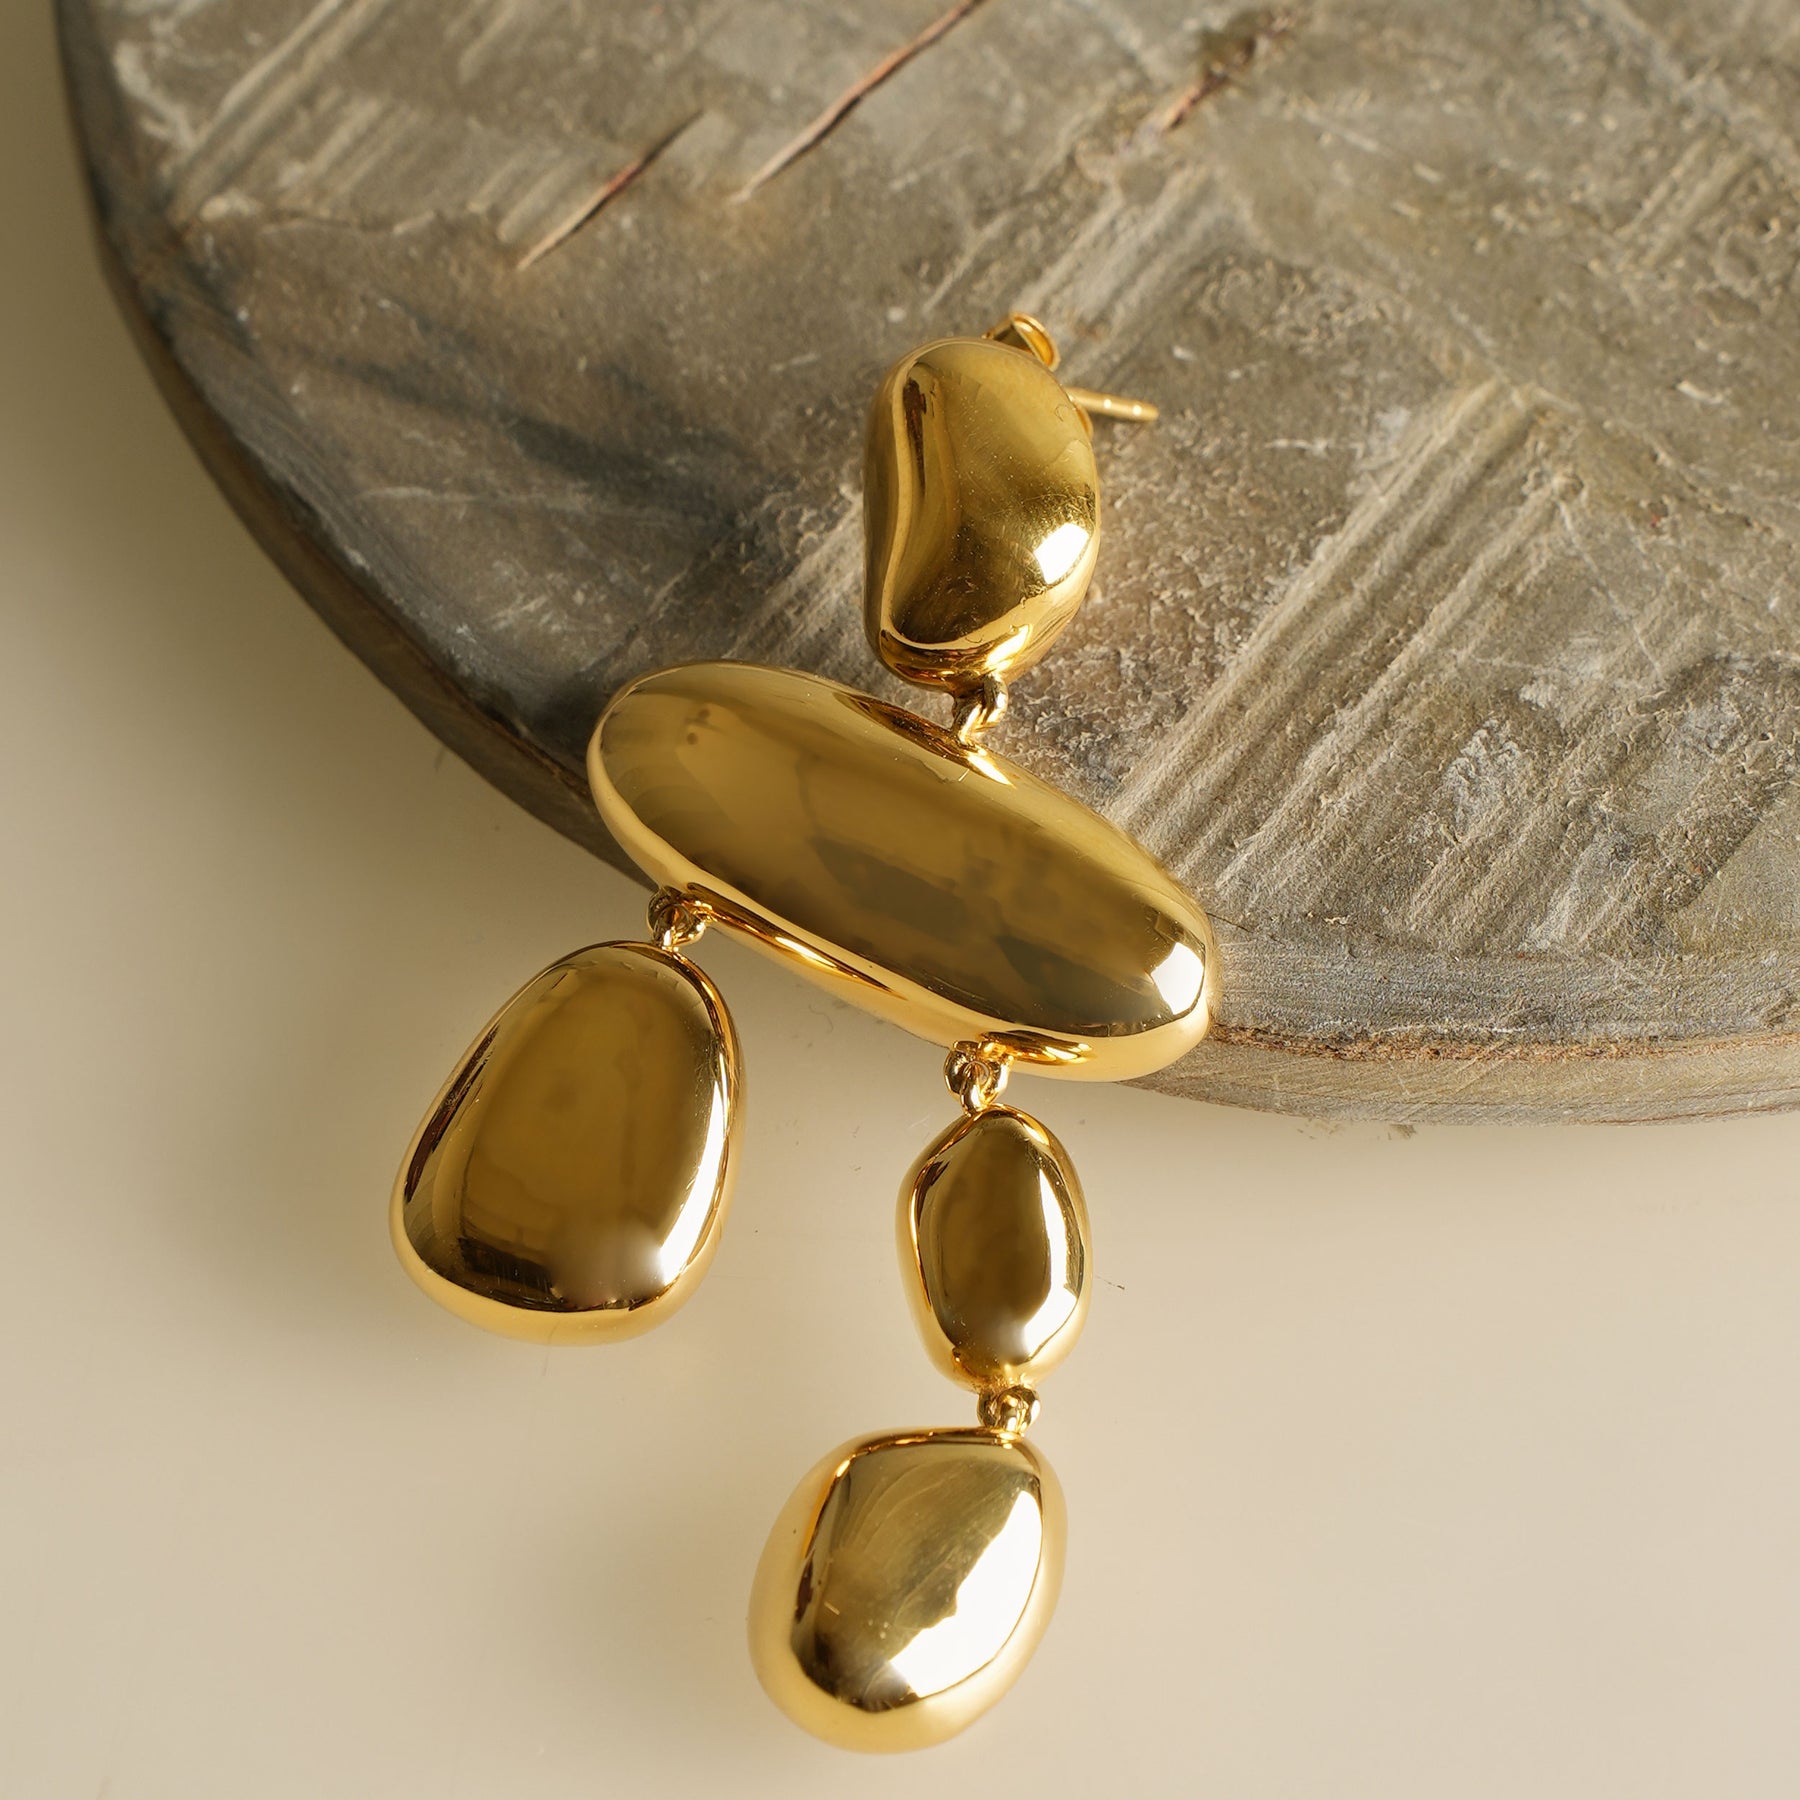 Glass Bead Earrings Freshwater Pearl Droop Hoop Earrings Latch Back Gold  Plated Hoops - Etsy Hong Kong